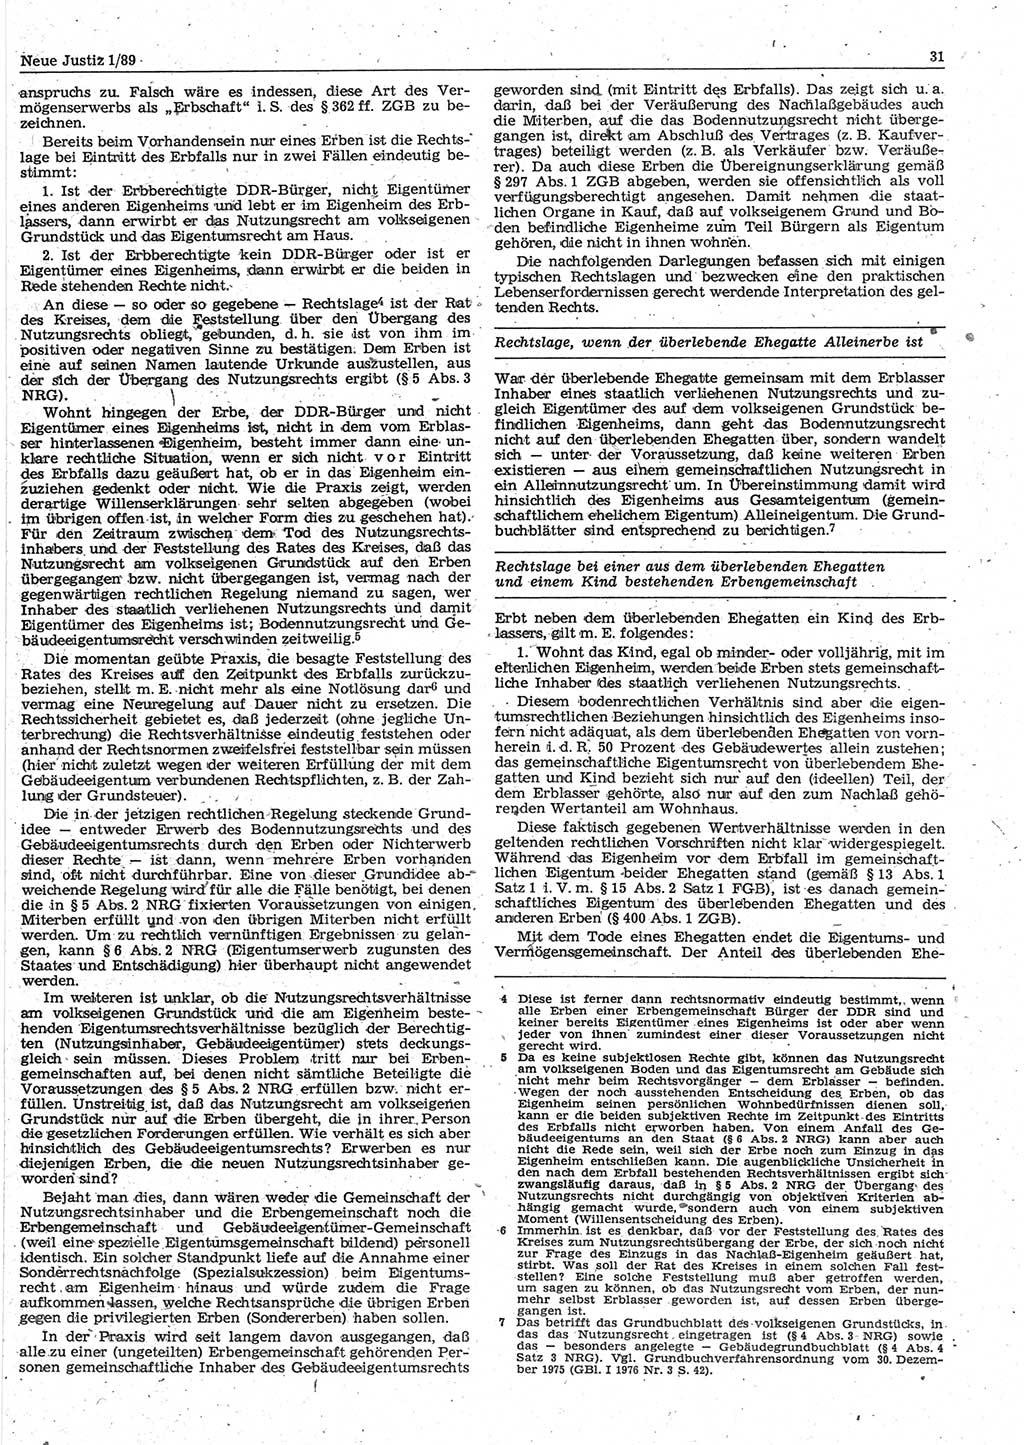 Neue Justiz (NJ), Zeitschrift für sozialistisches Recht und Gesetzlichkeit [Deutsche Demokratische Republik (DDR)], 43. Jahrgang 1989, Seite 31 (NJ DDR 1989, S. 31)